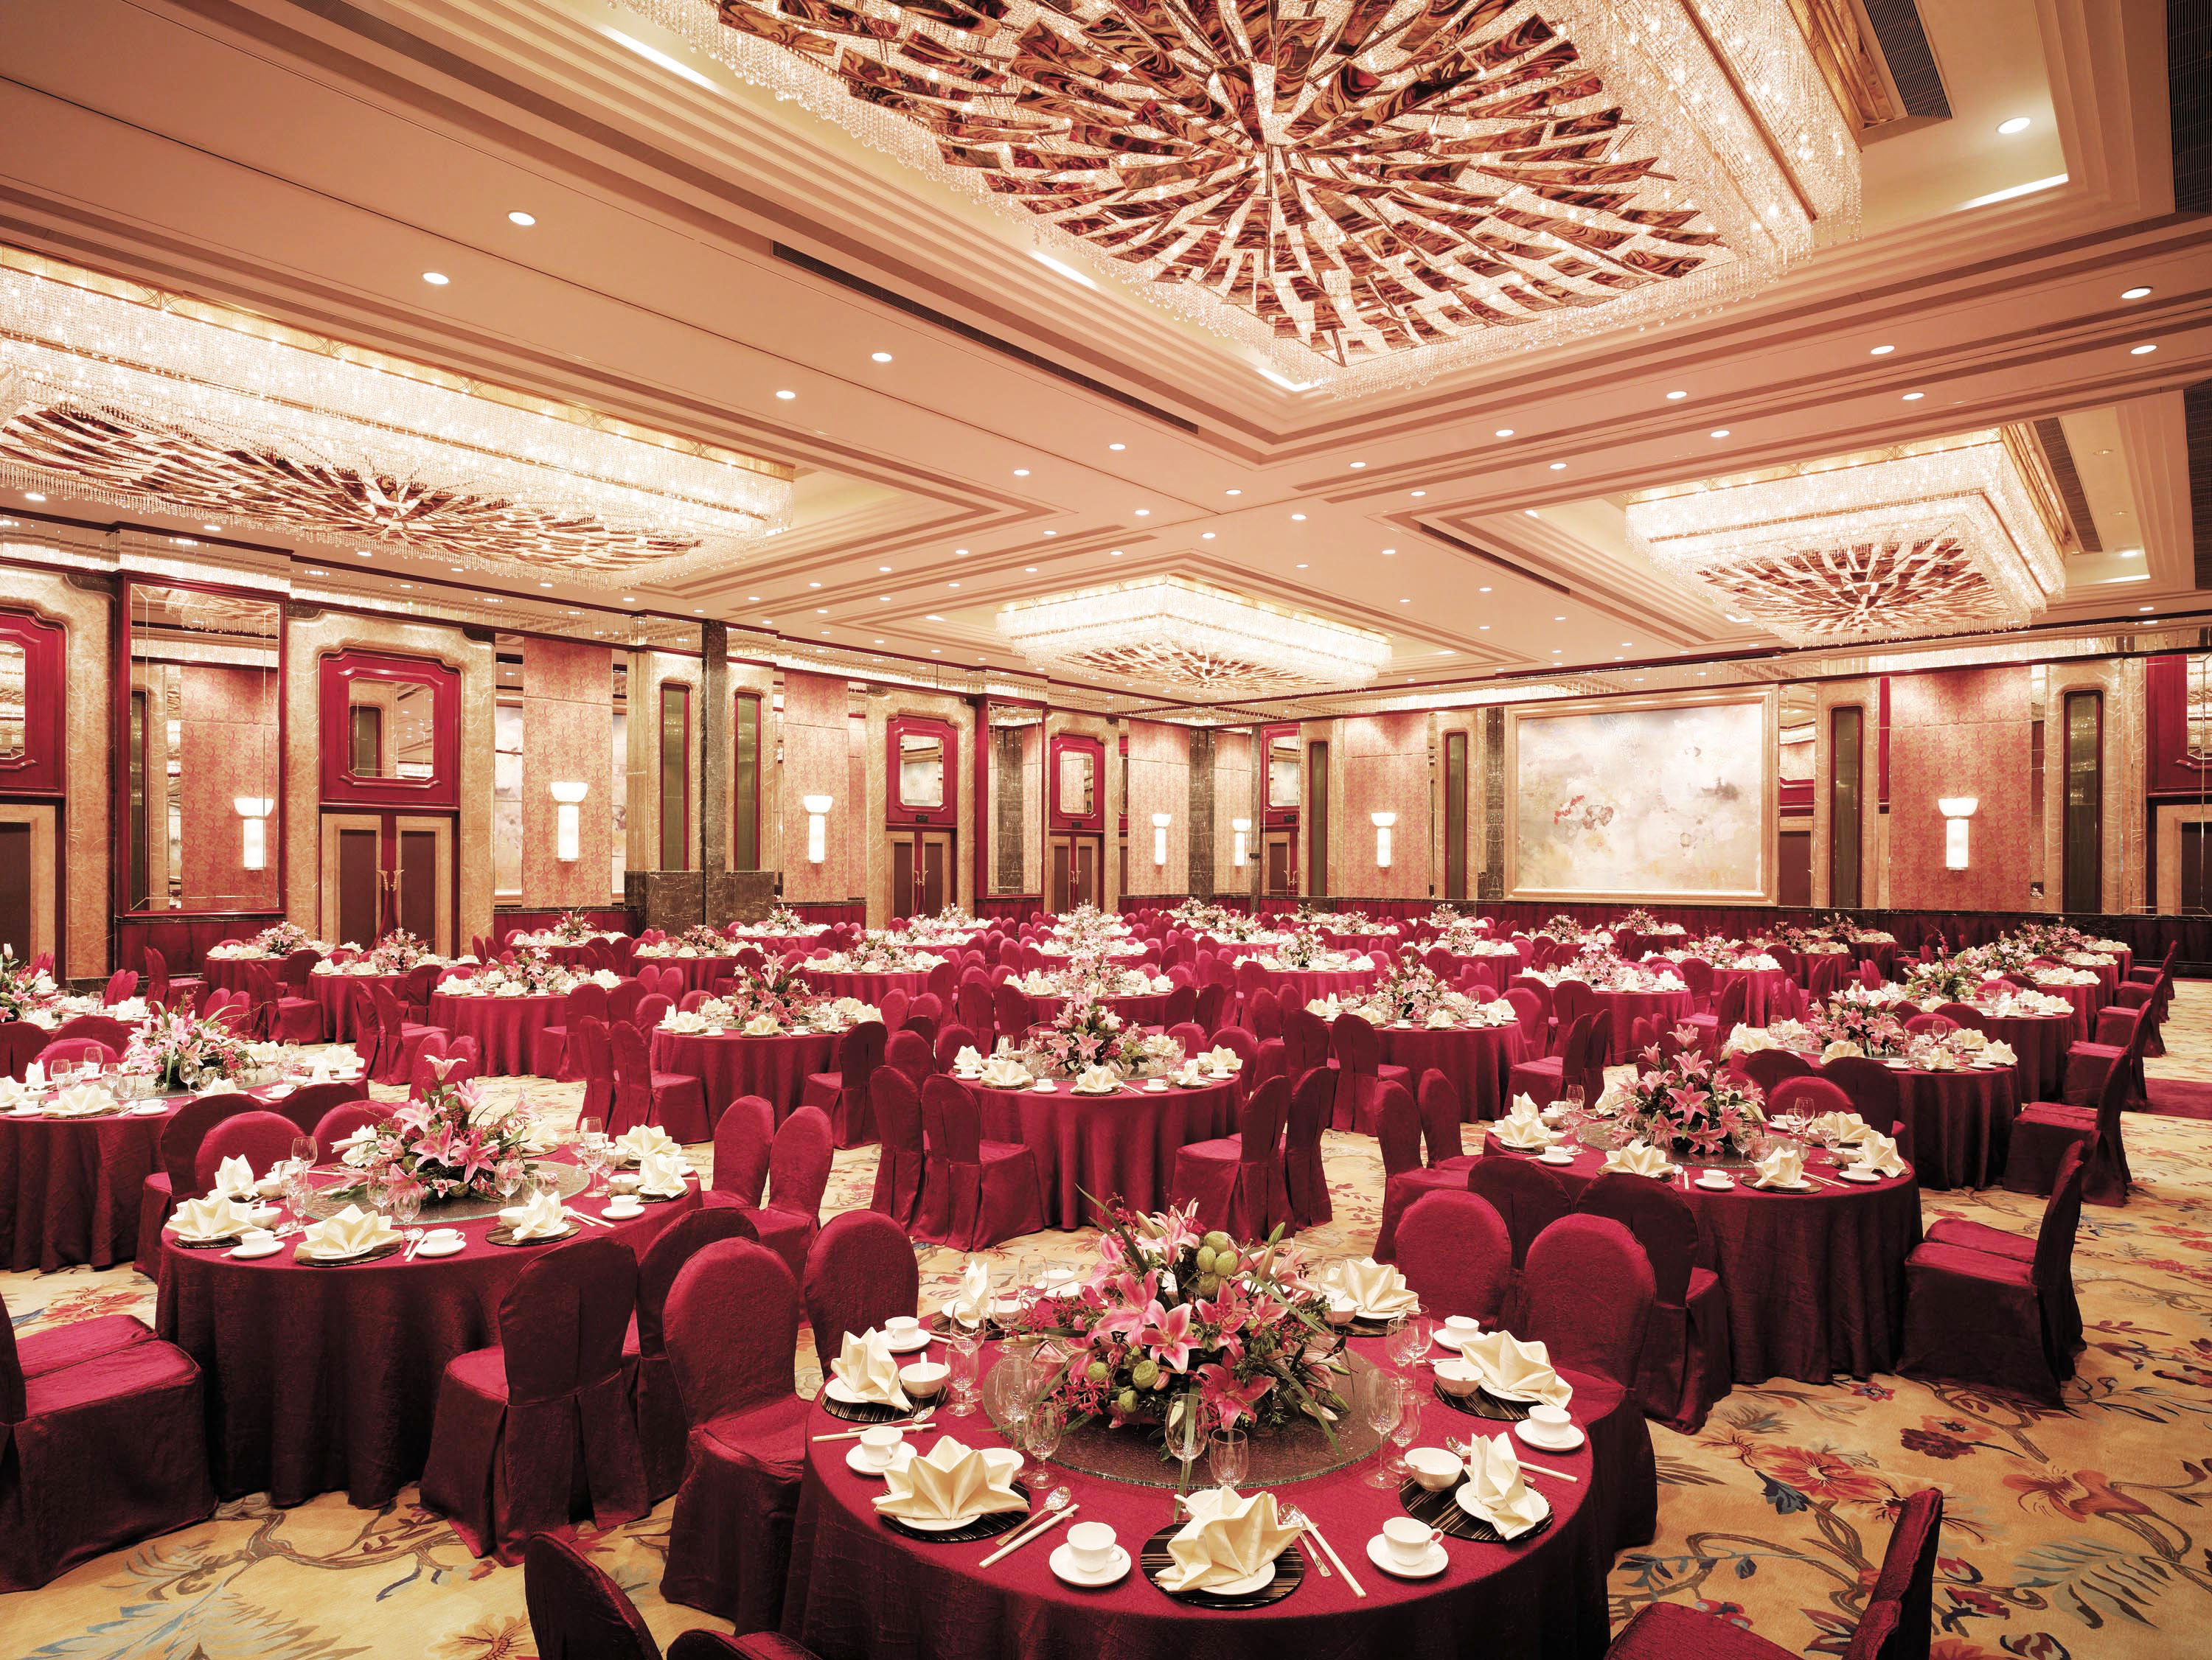 广州香格里拉酒店婚宴图片